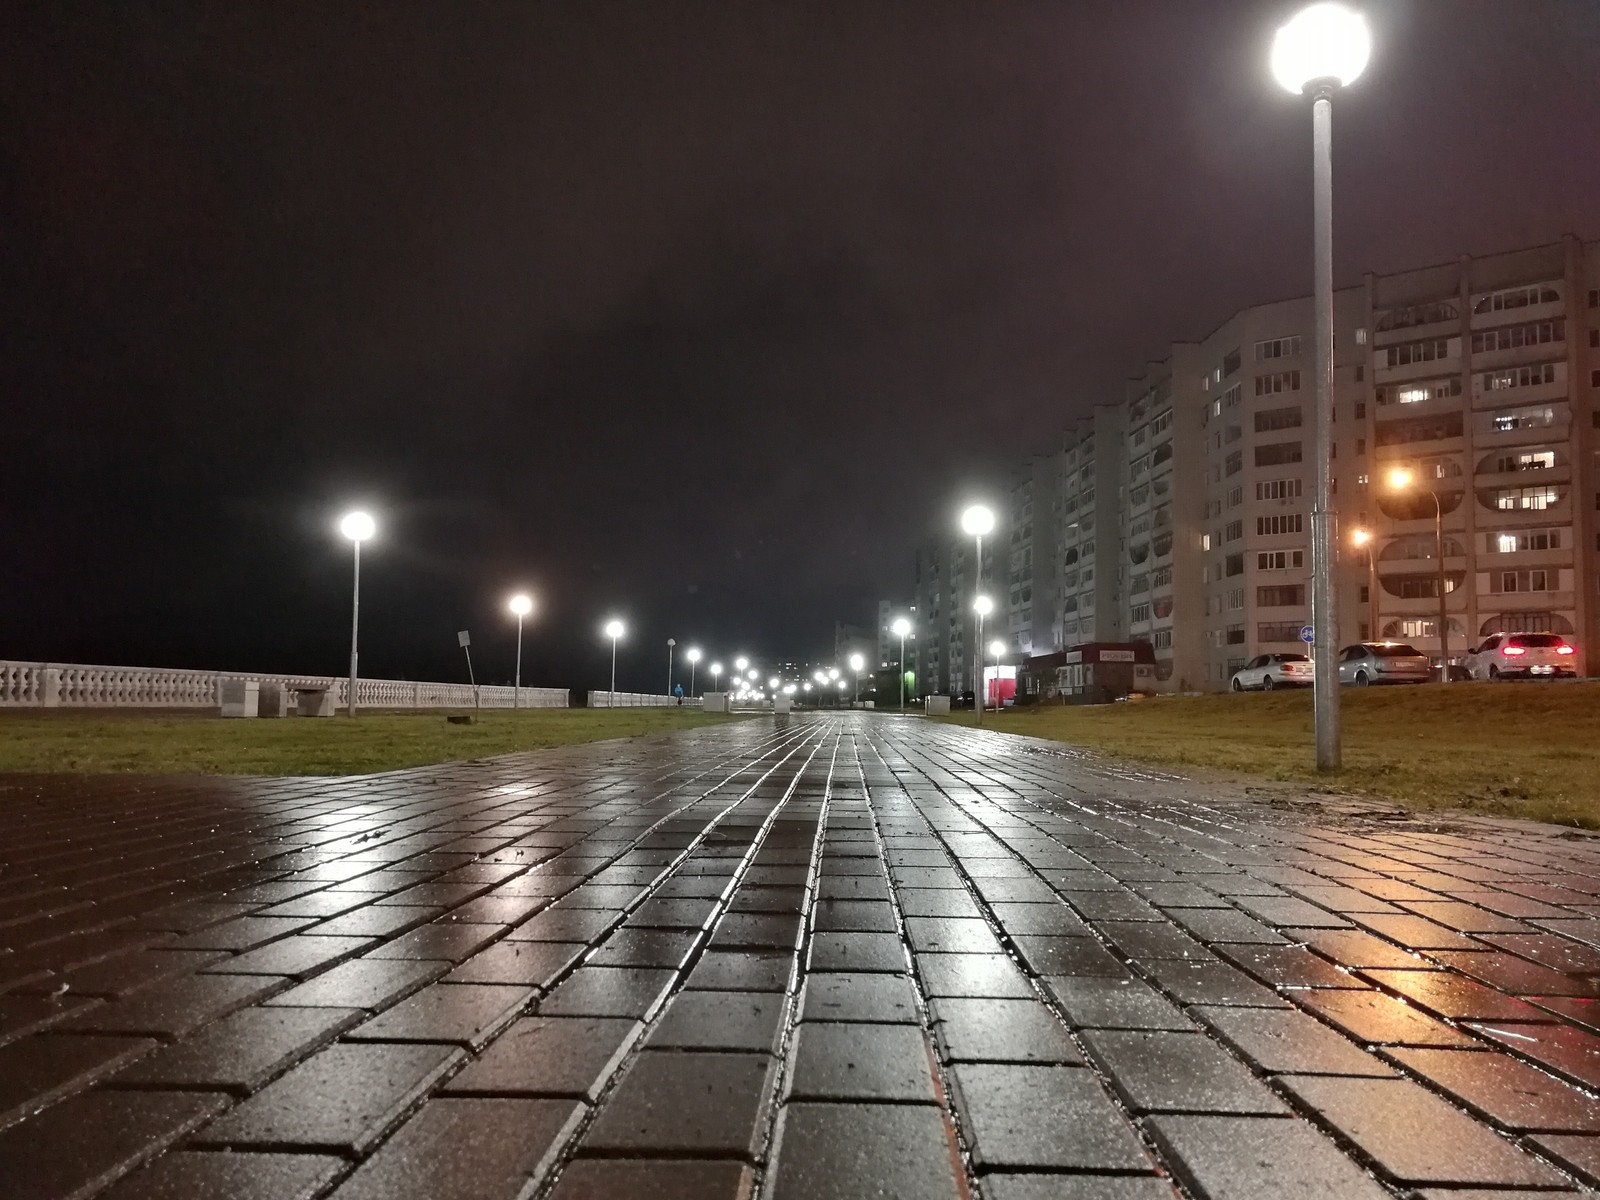 Фото Альфа на улице вечером. Street Lamp. Погода вечером на улице